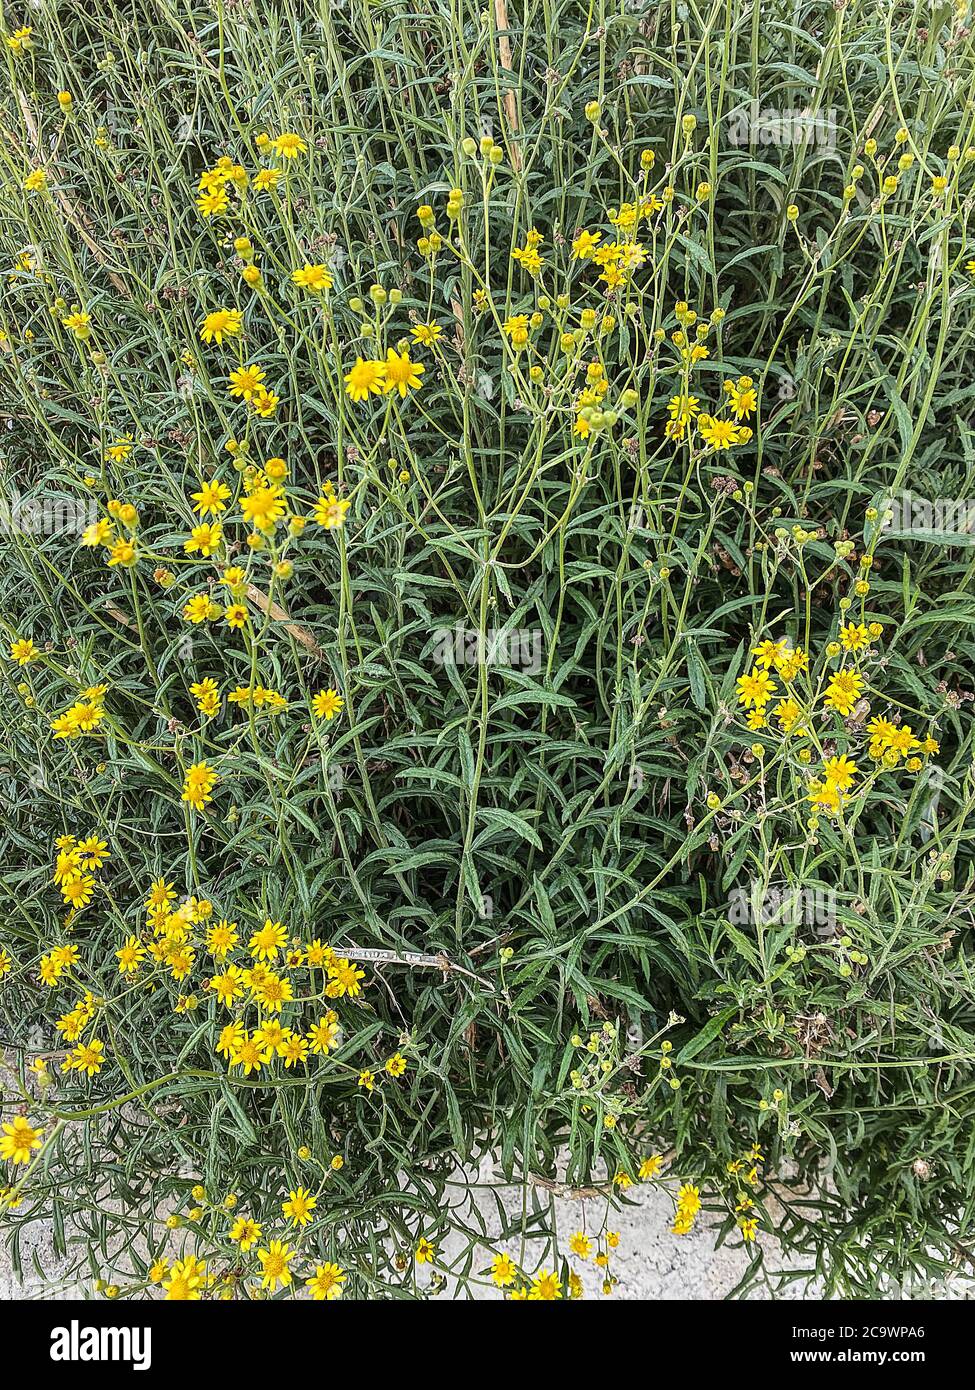 Blumen, Wildblumen, Feldblumen, Kräuter, Arnika, arnica, Herbs Stock Photo